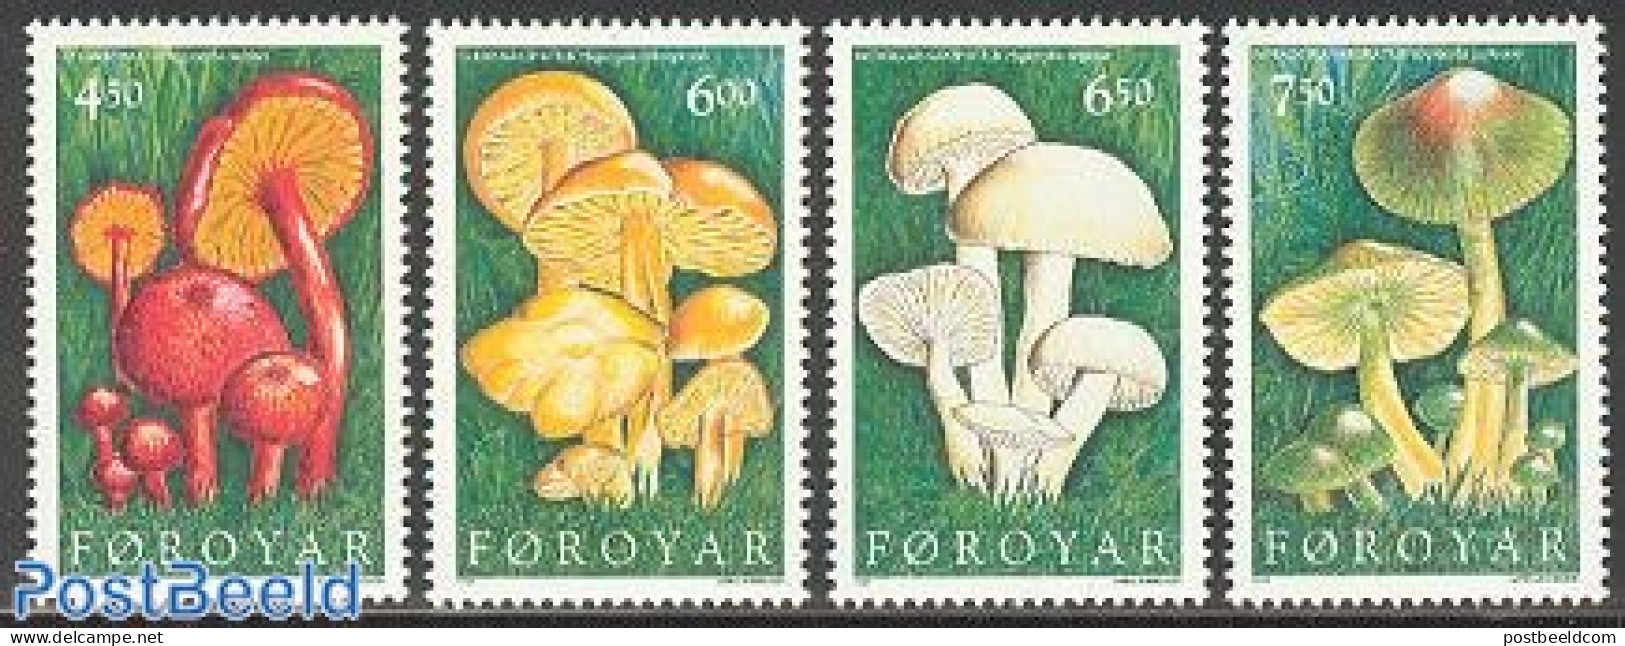 Faroe Islands 1997 Mushrooms 4v, Mint NH, Nature - Mushrooms - Hongos